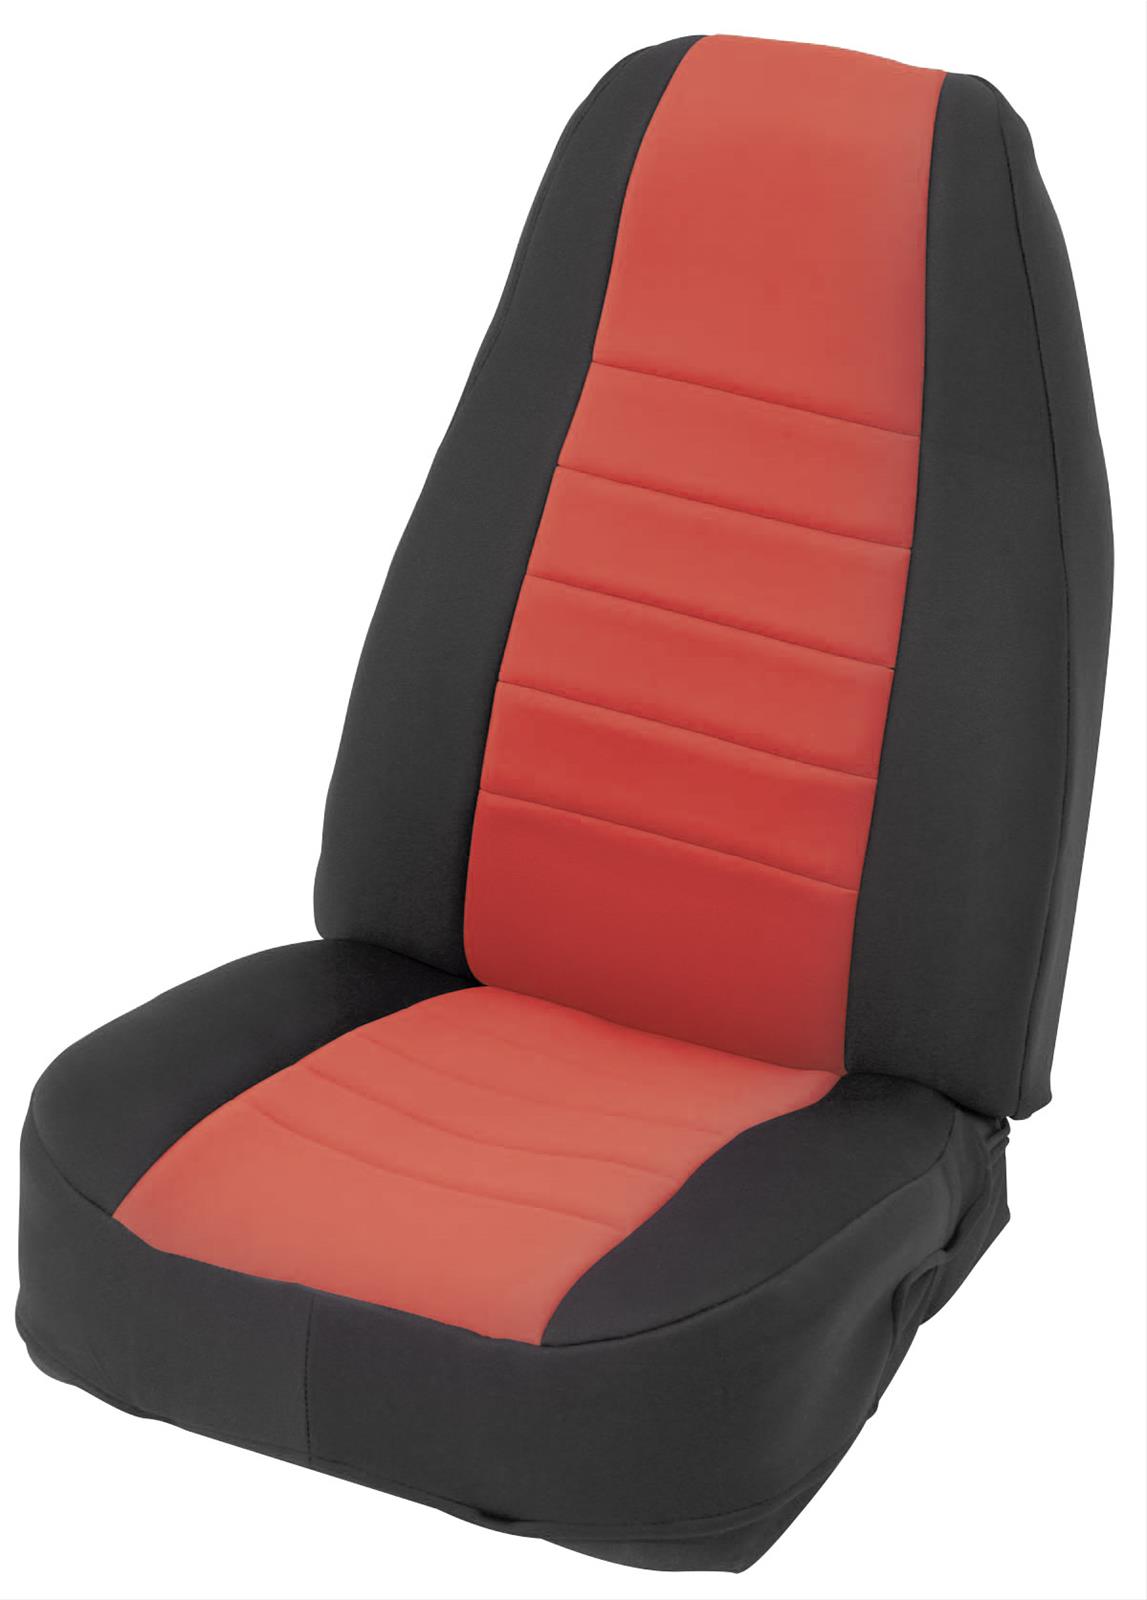 Smittybilt 471330 Neoprene Seat Cover Set 